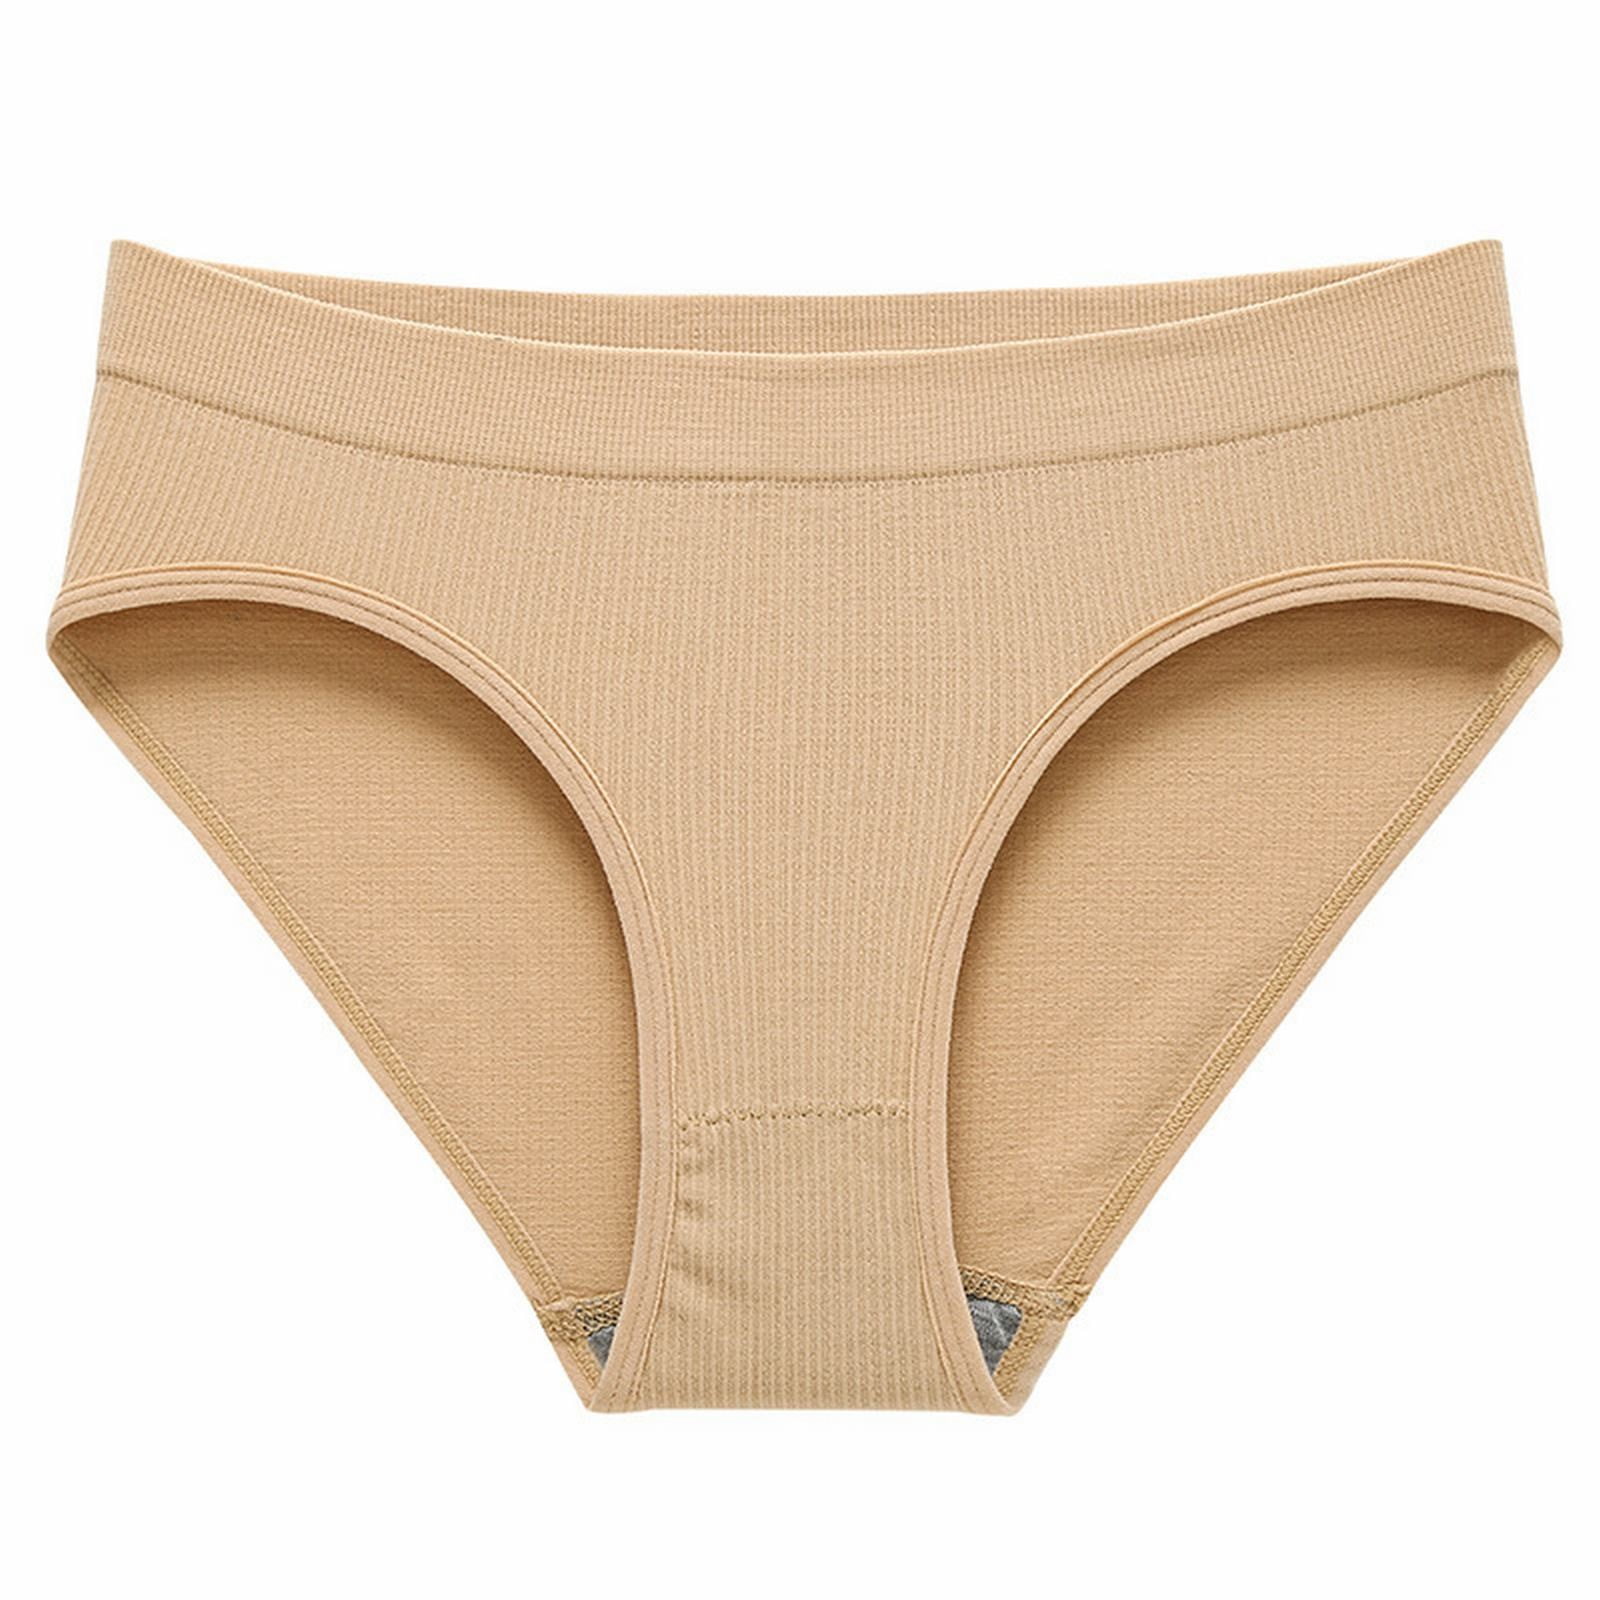 Akiihool Women's Panties Womens Underwear High Waist Cotton Underwear Soft  Underwear Super Stretchy Briefs Panties Women (White,L) 